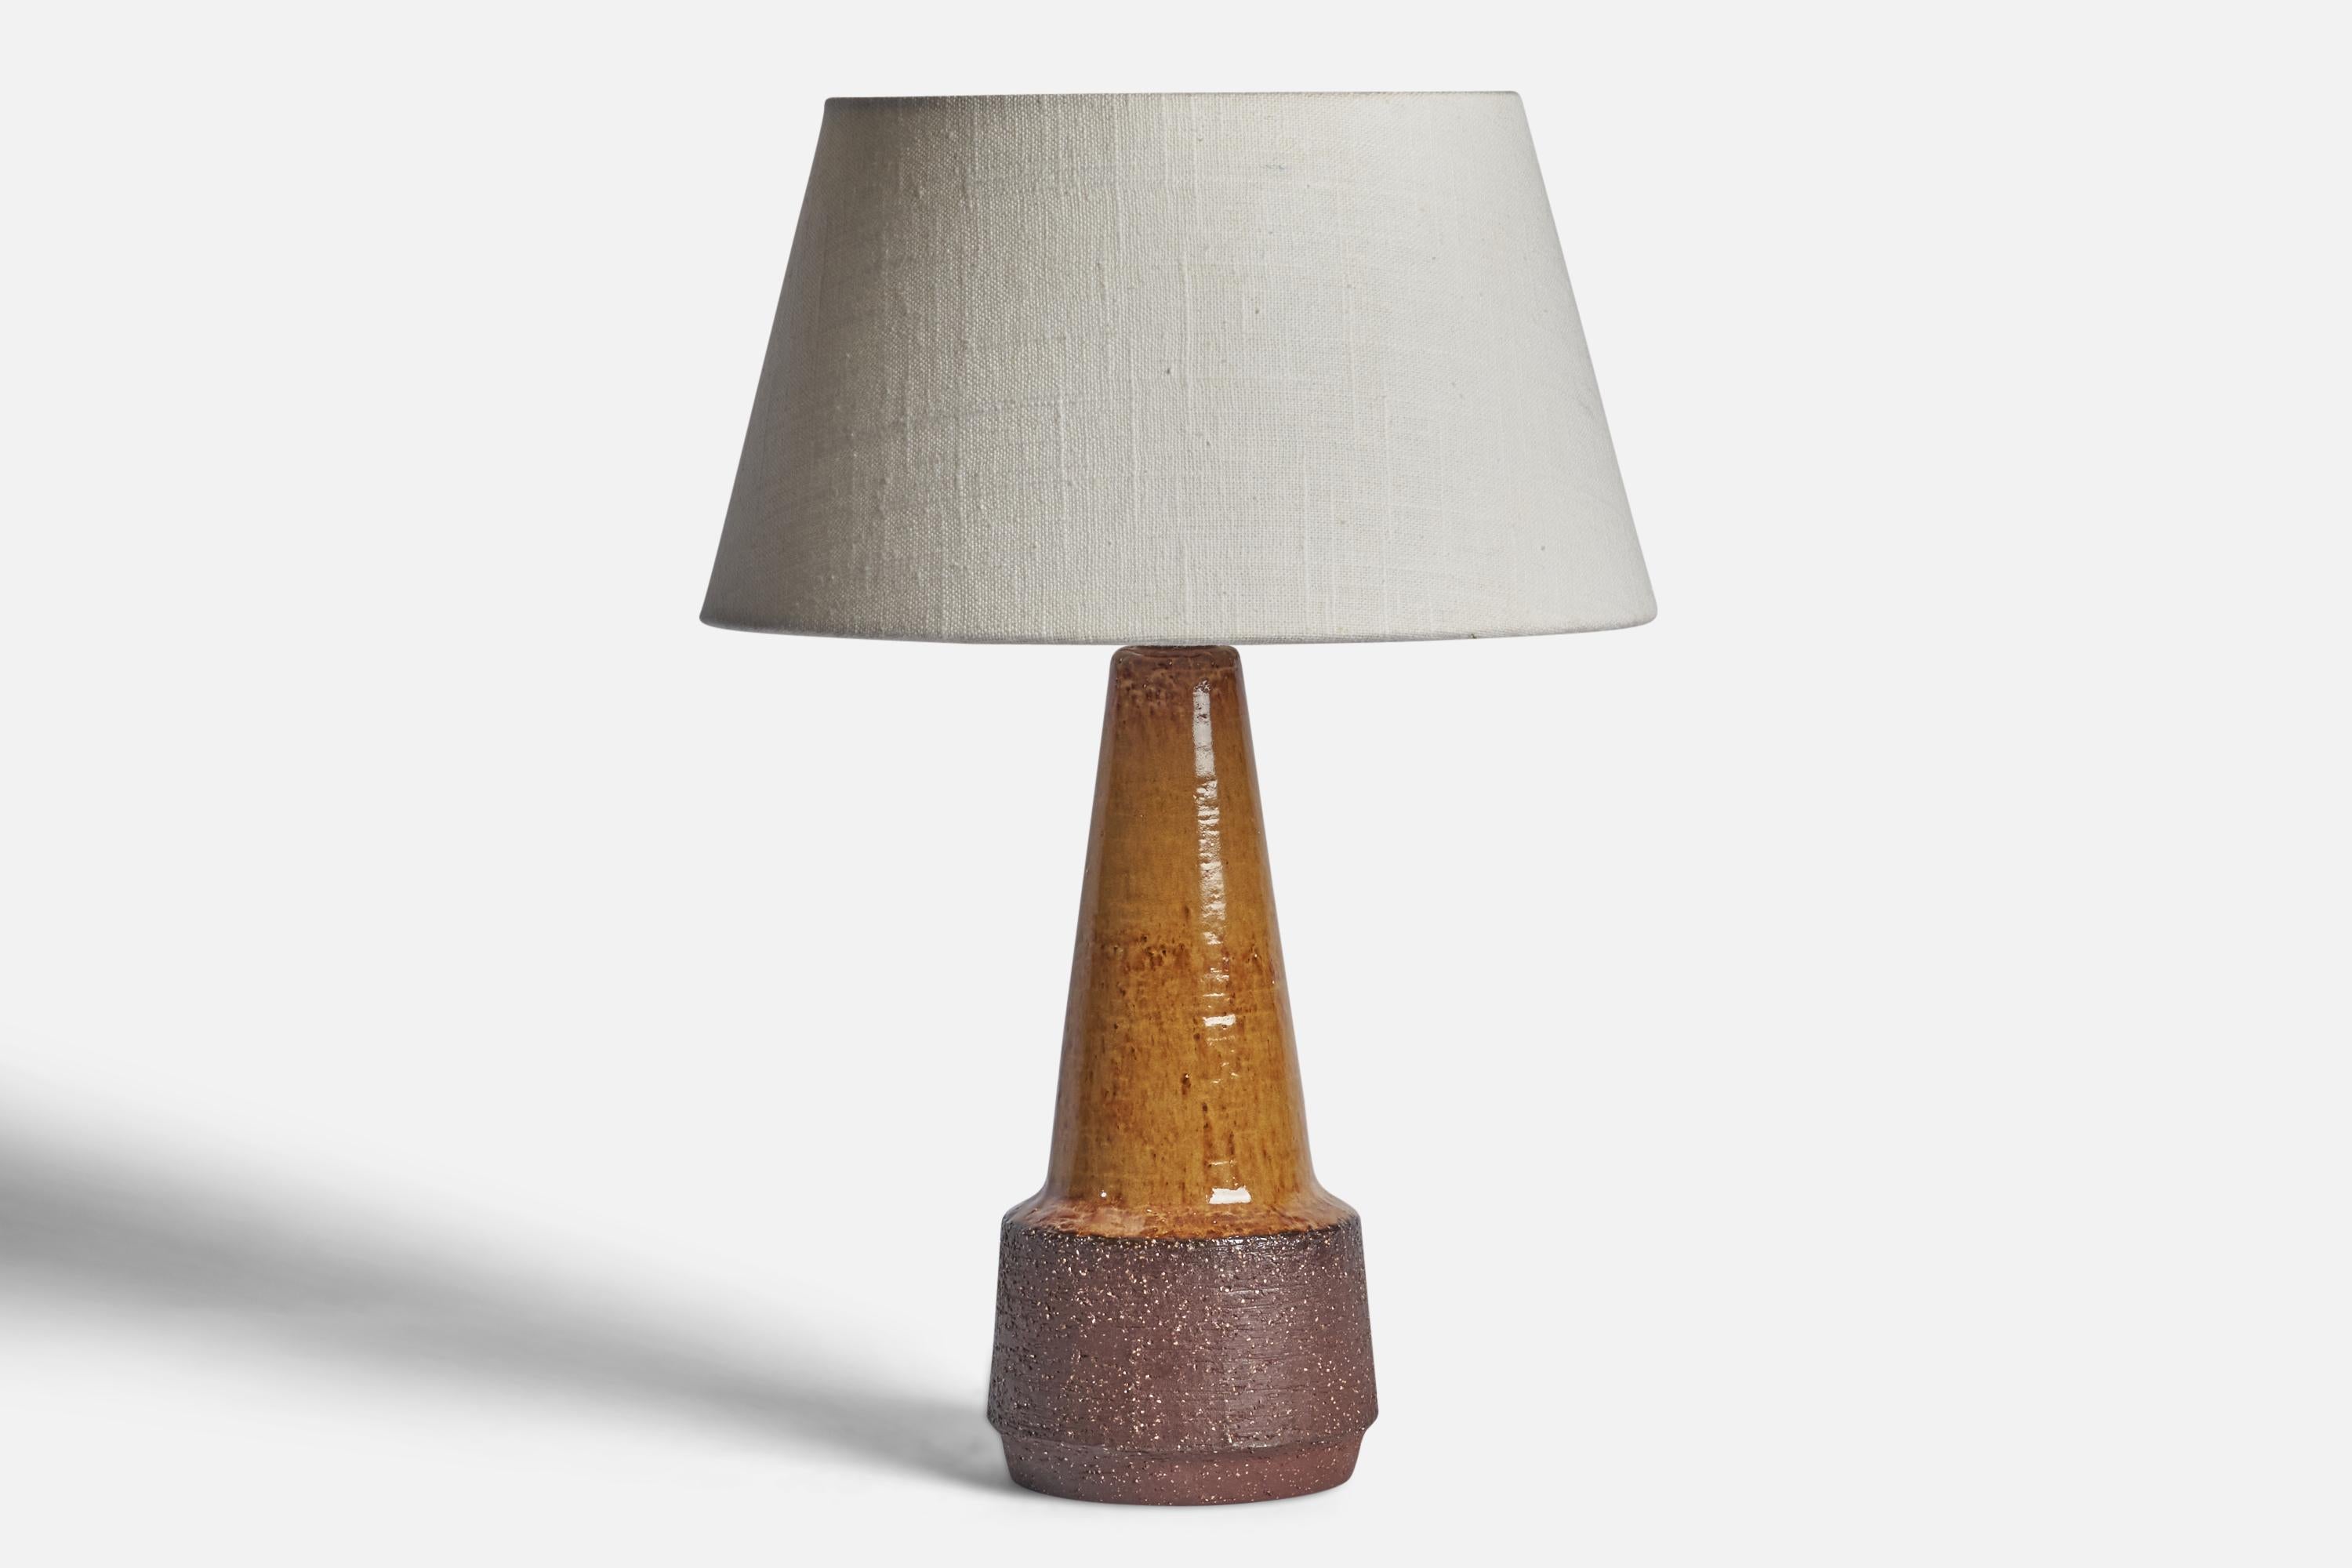 Braune Tischlampe aus halbglasiertem Steingut, entworfen und hergestellt von Michael Andersen, Bornholm, Dänemark, um 1960.

Abmessungen der Lampe (Zoll): 11,65